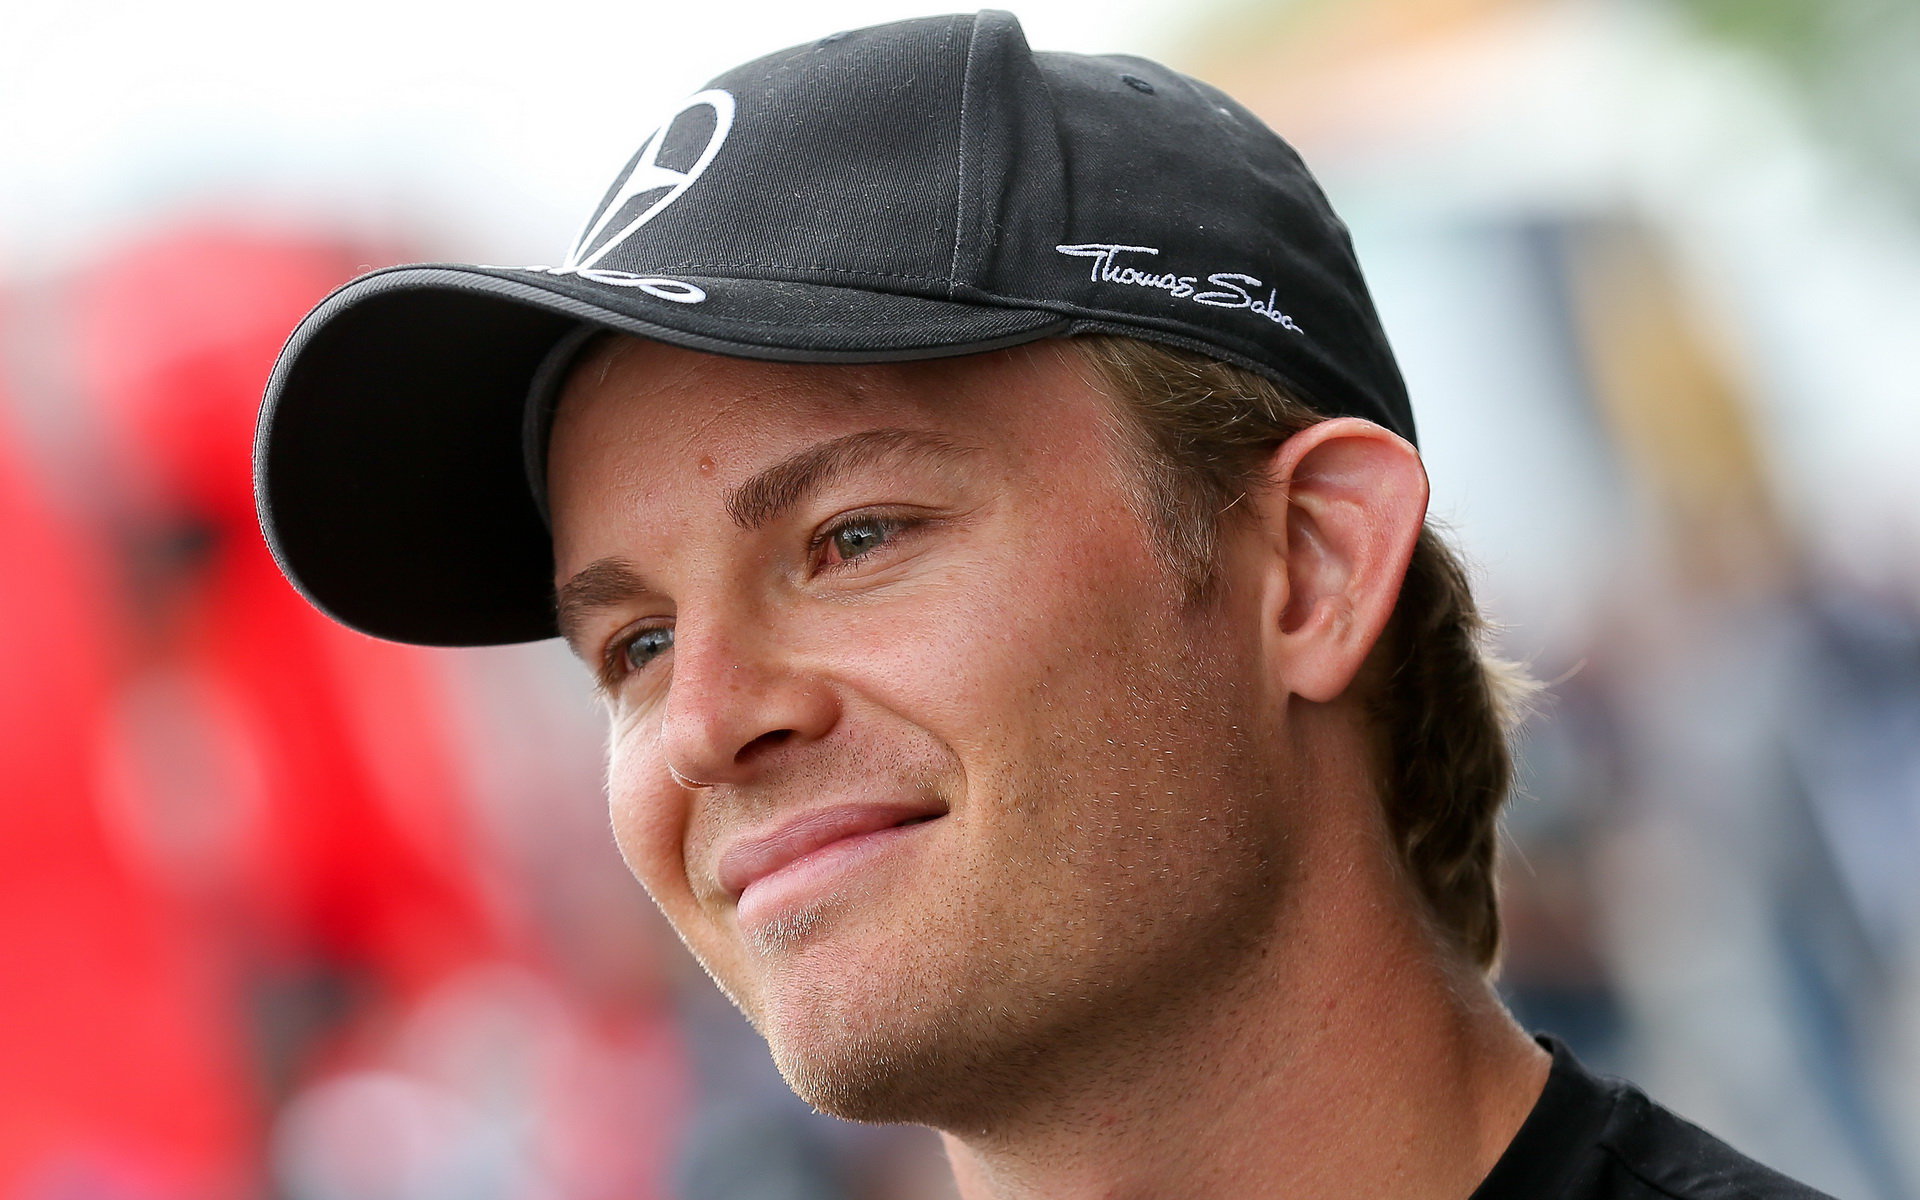 Rosberg navrhuje zavedení speciálních kamer, které by upozornily na defekty zadních pneumatik.